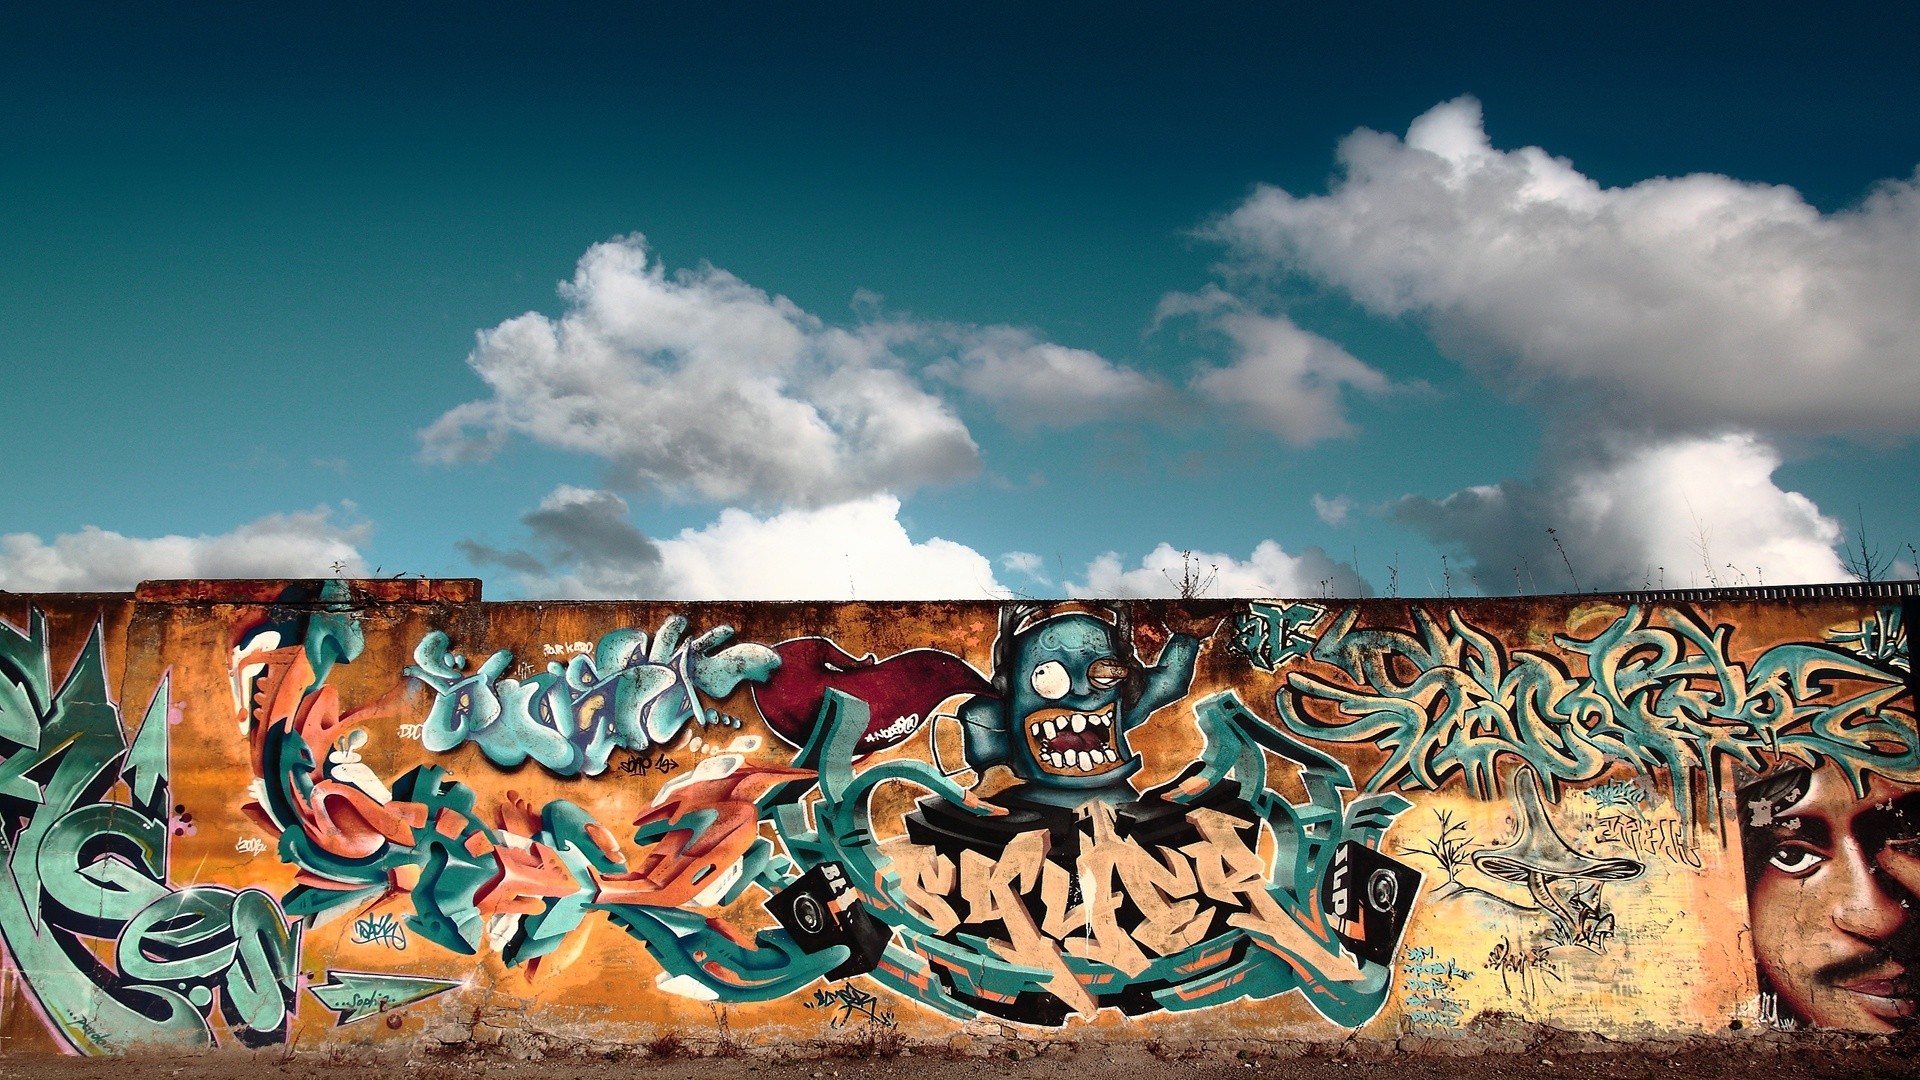 General 1920x1080 graffiti artwork wall clouds urban